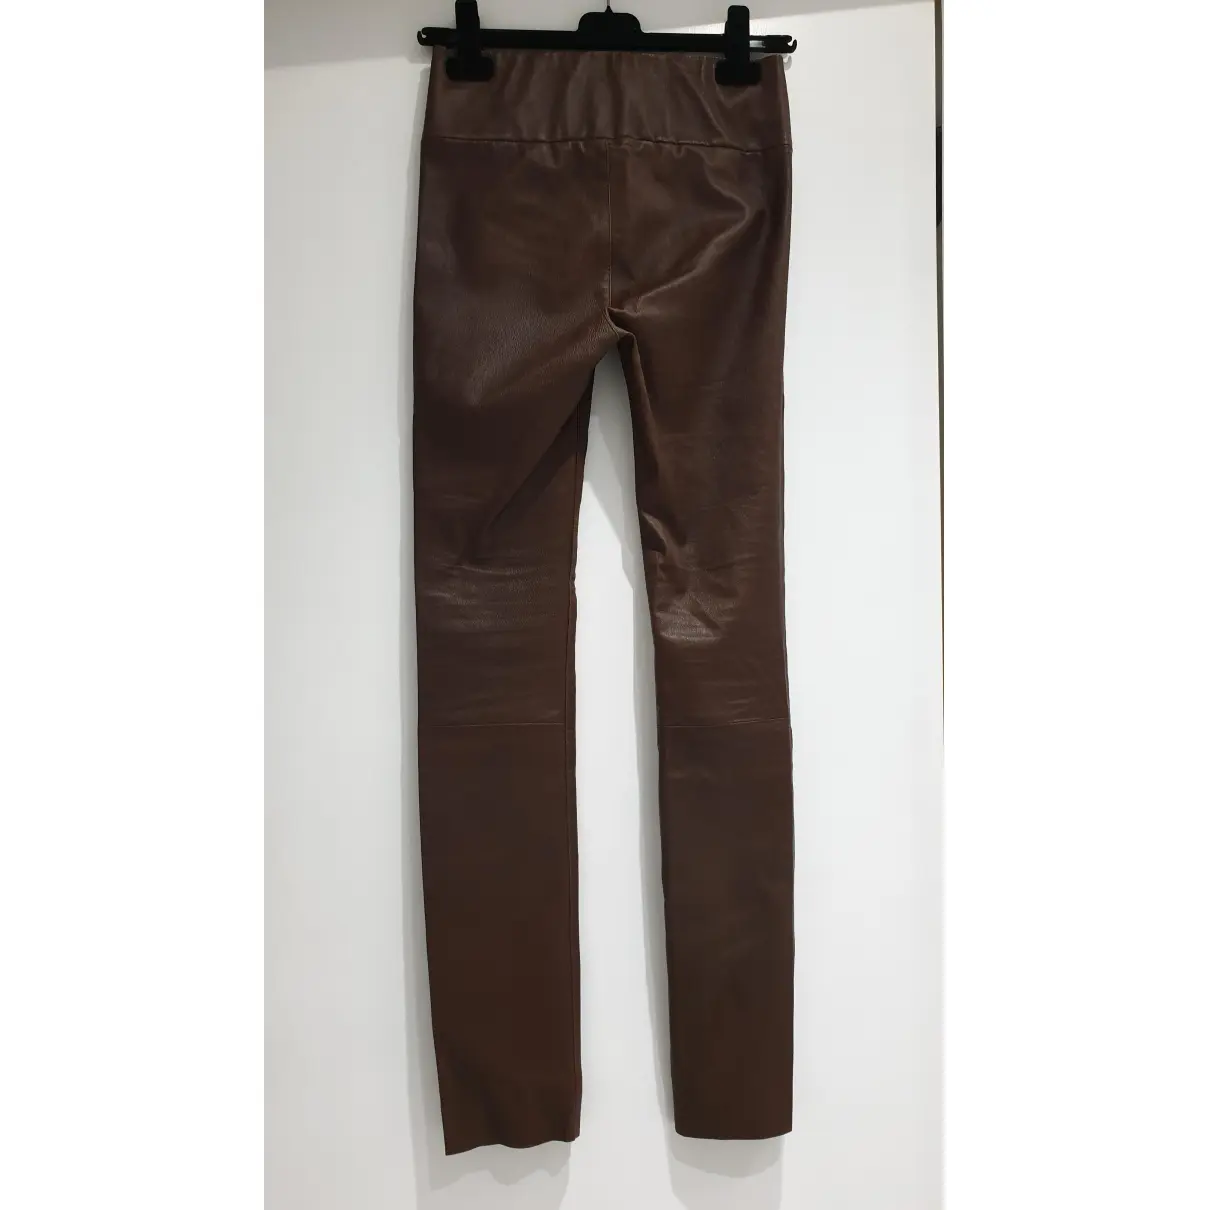 Buy SPRWMN Leather leggings online